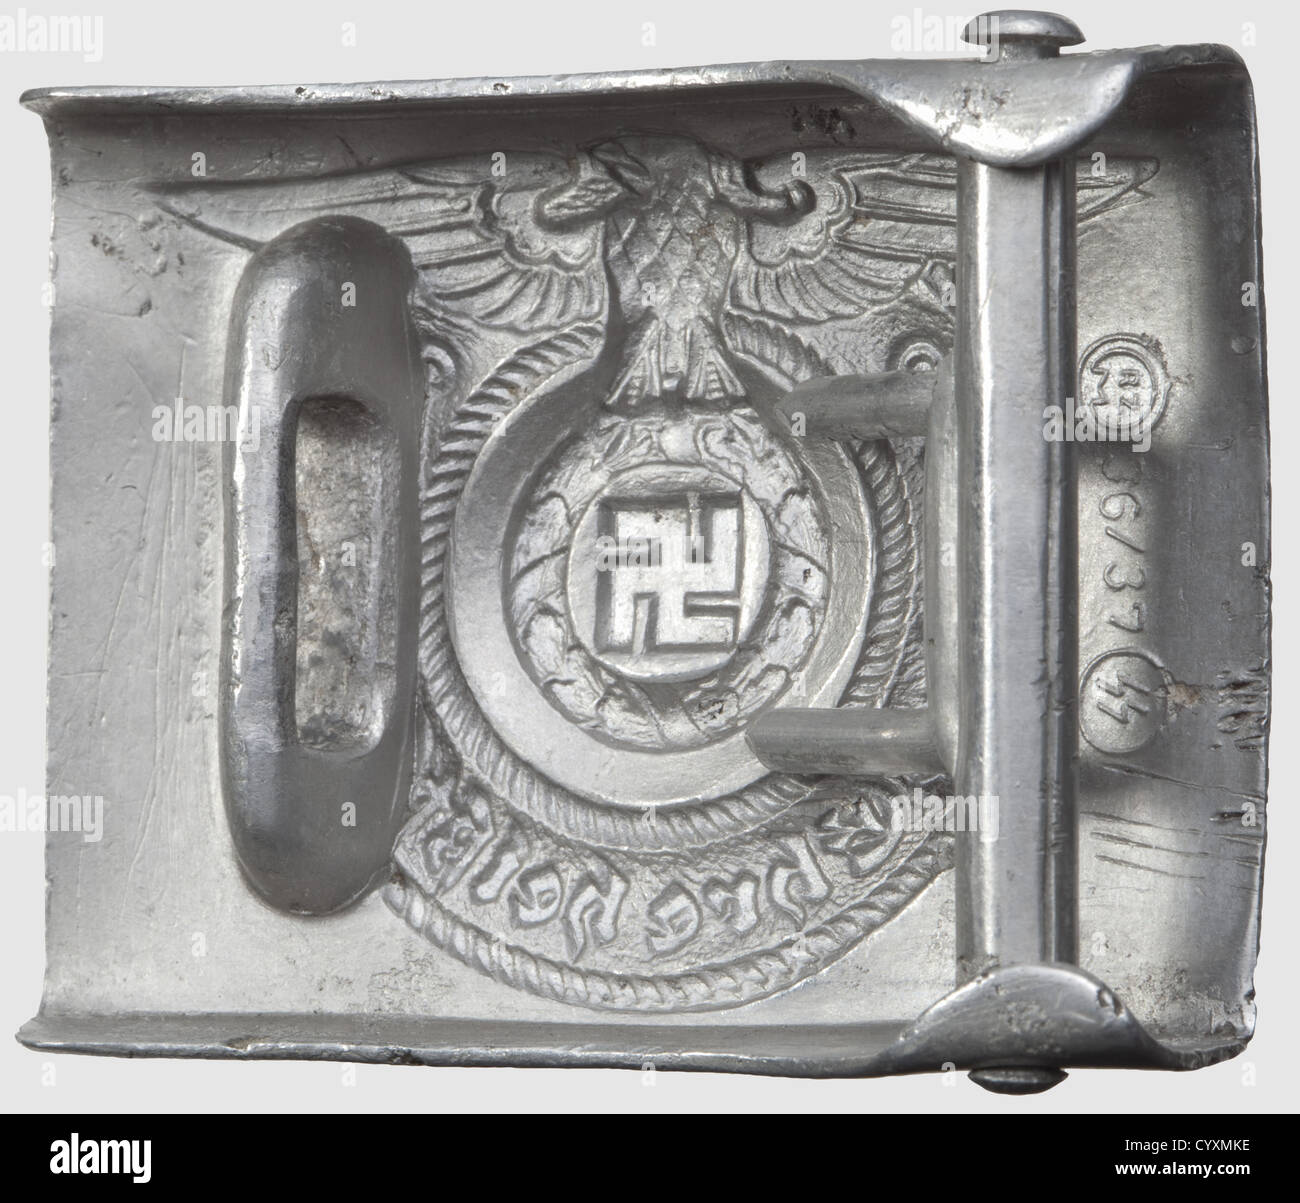 Boucle de ceinture pour hommes inscrits et 'Unterführer', en aluminium,  fabricant Assmann 'RZM 155/39 SS', traces d'oxydation, historique,  historique, années 1930, années 1930, XXe siècle, service secret, service  de sécurité, services secrets,